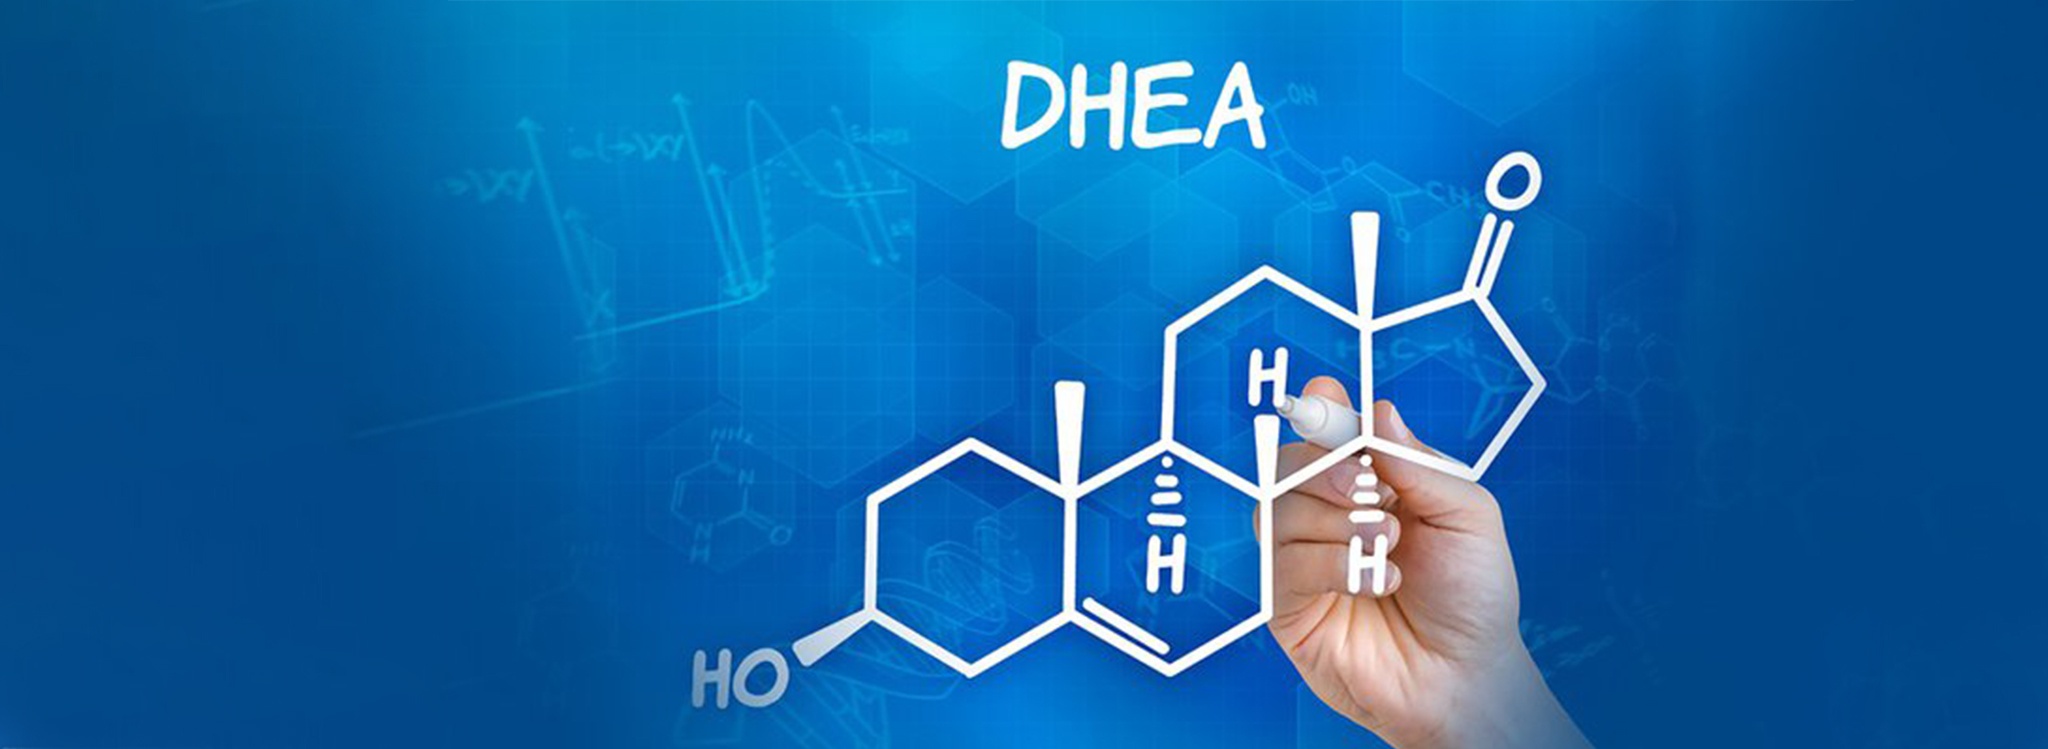  DHEA có tác dụng để cải thiện ham muốn tình dục, tăng cơ bắp, chống lại tác động của lão hóa và cải thiện một số tình trạng sức khỏe.